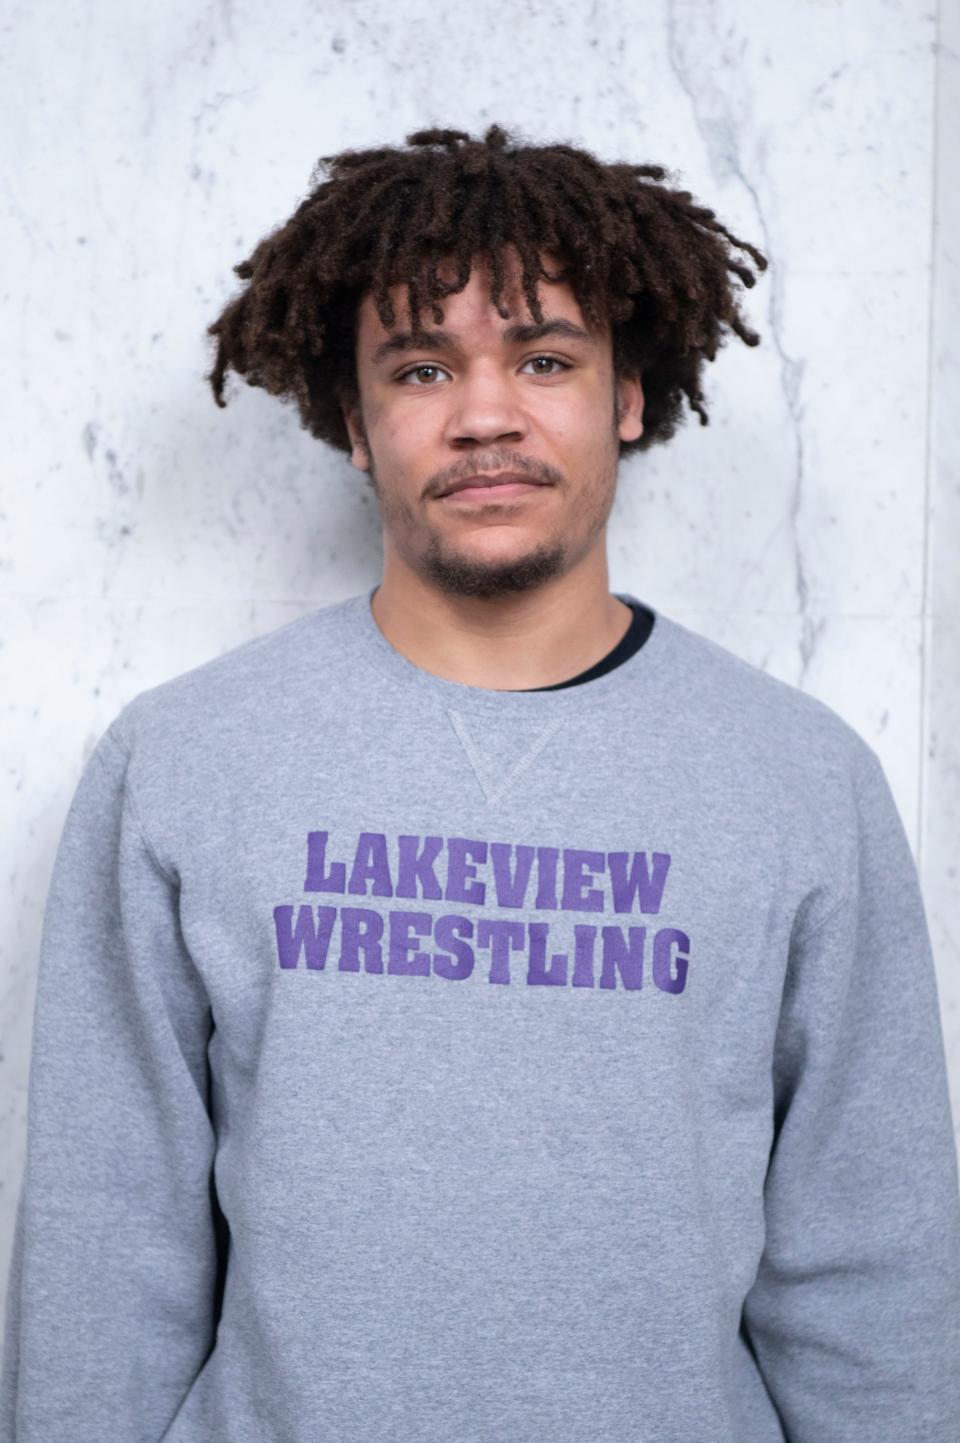 Lakeview wrestler Dayveon Rupert.